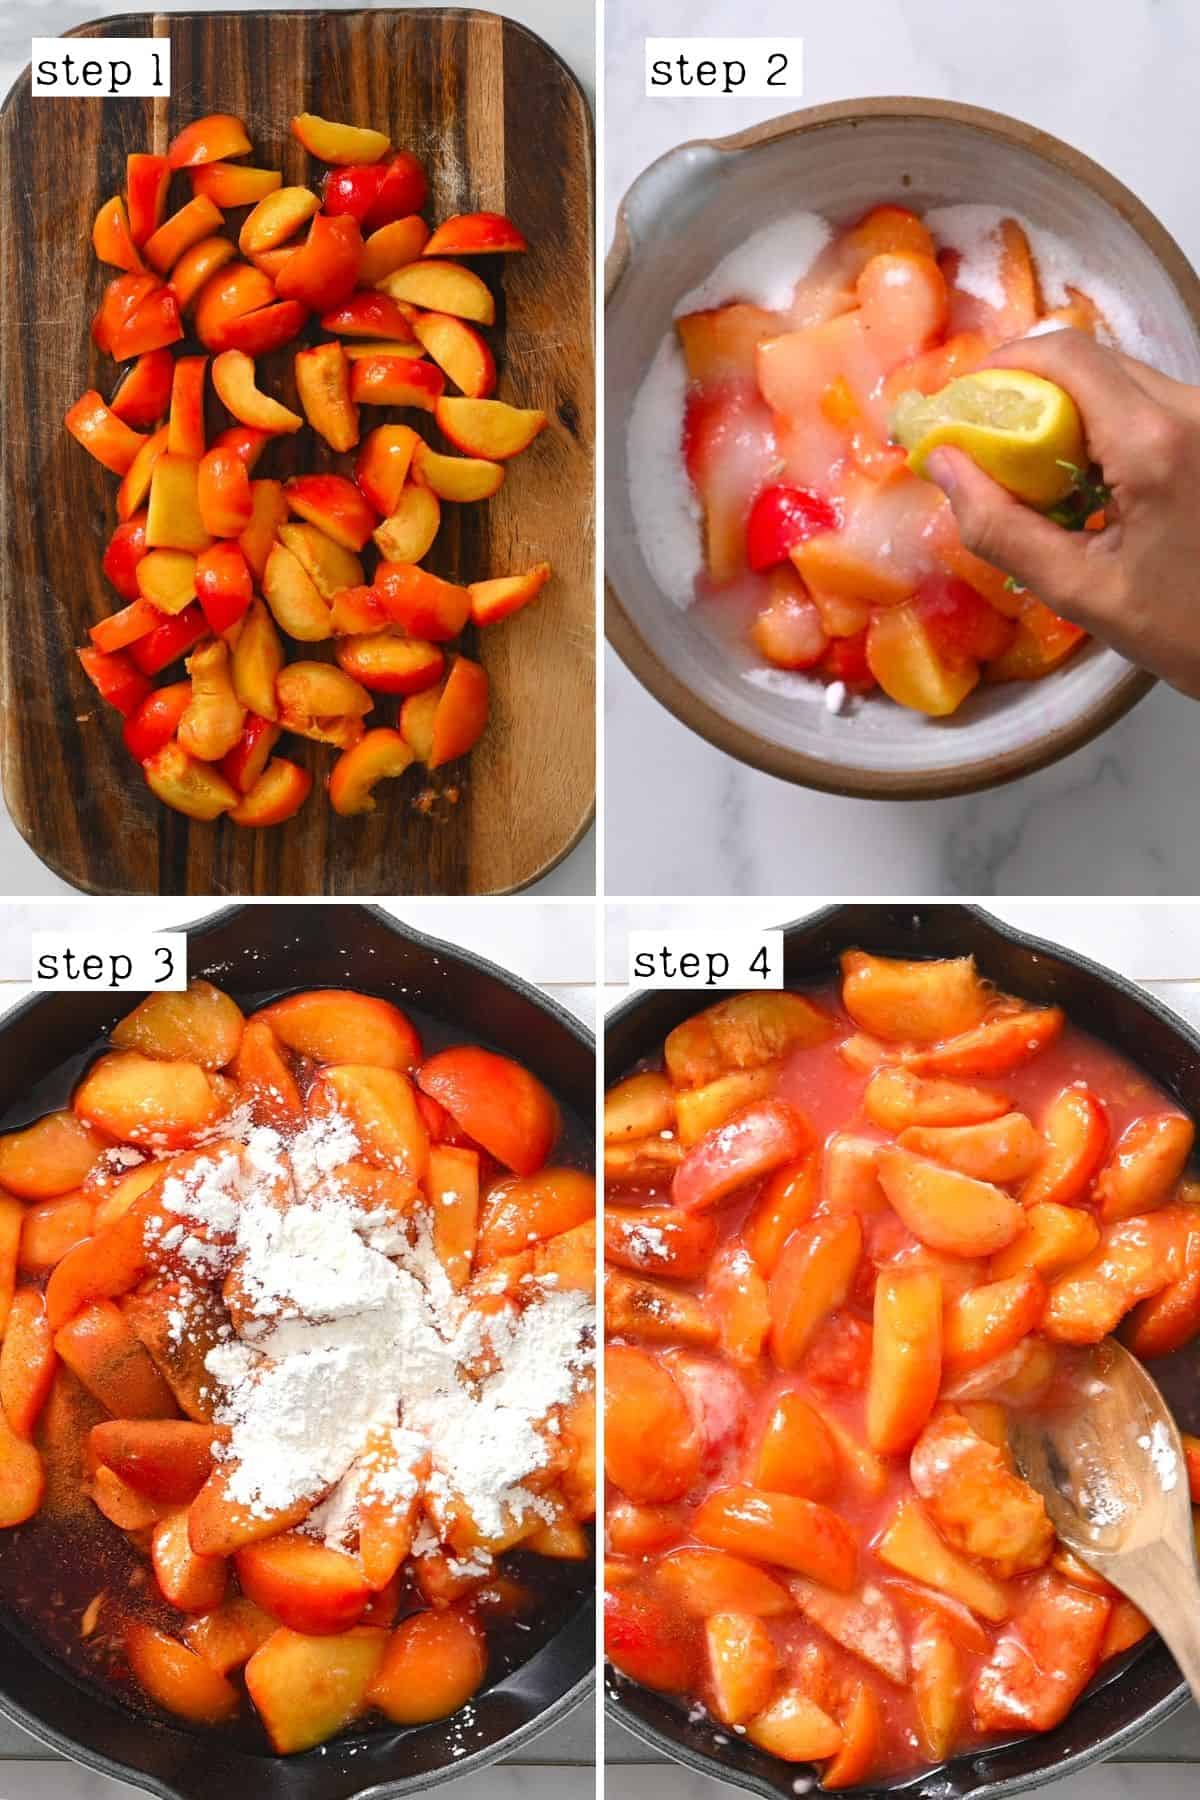 Steps for preparing peaches for cobbler